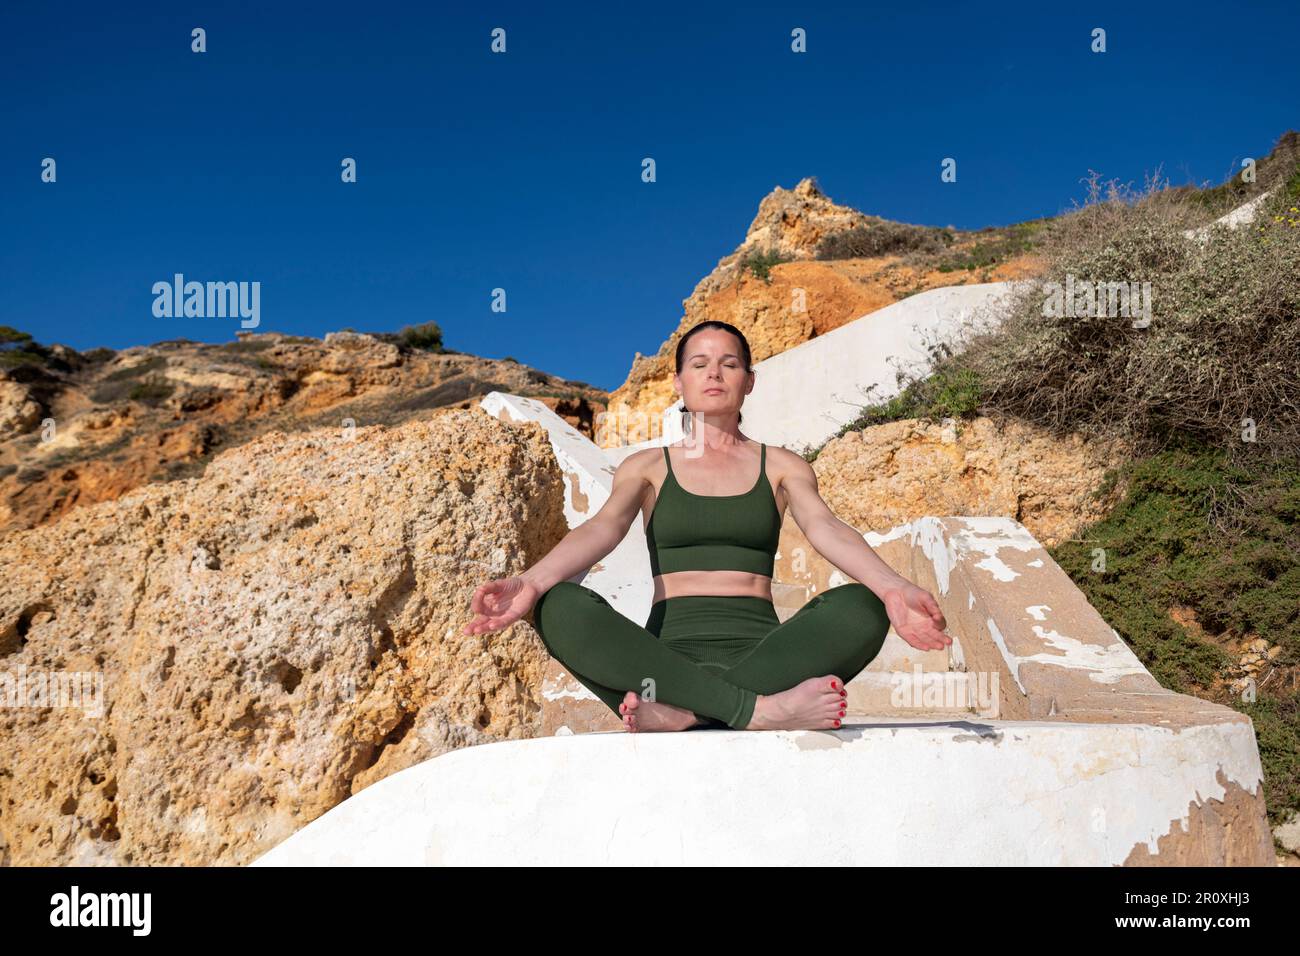 Mujer meditando y practicando yoga fuera, Algarve, Portugal. Foto de stock